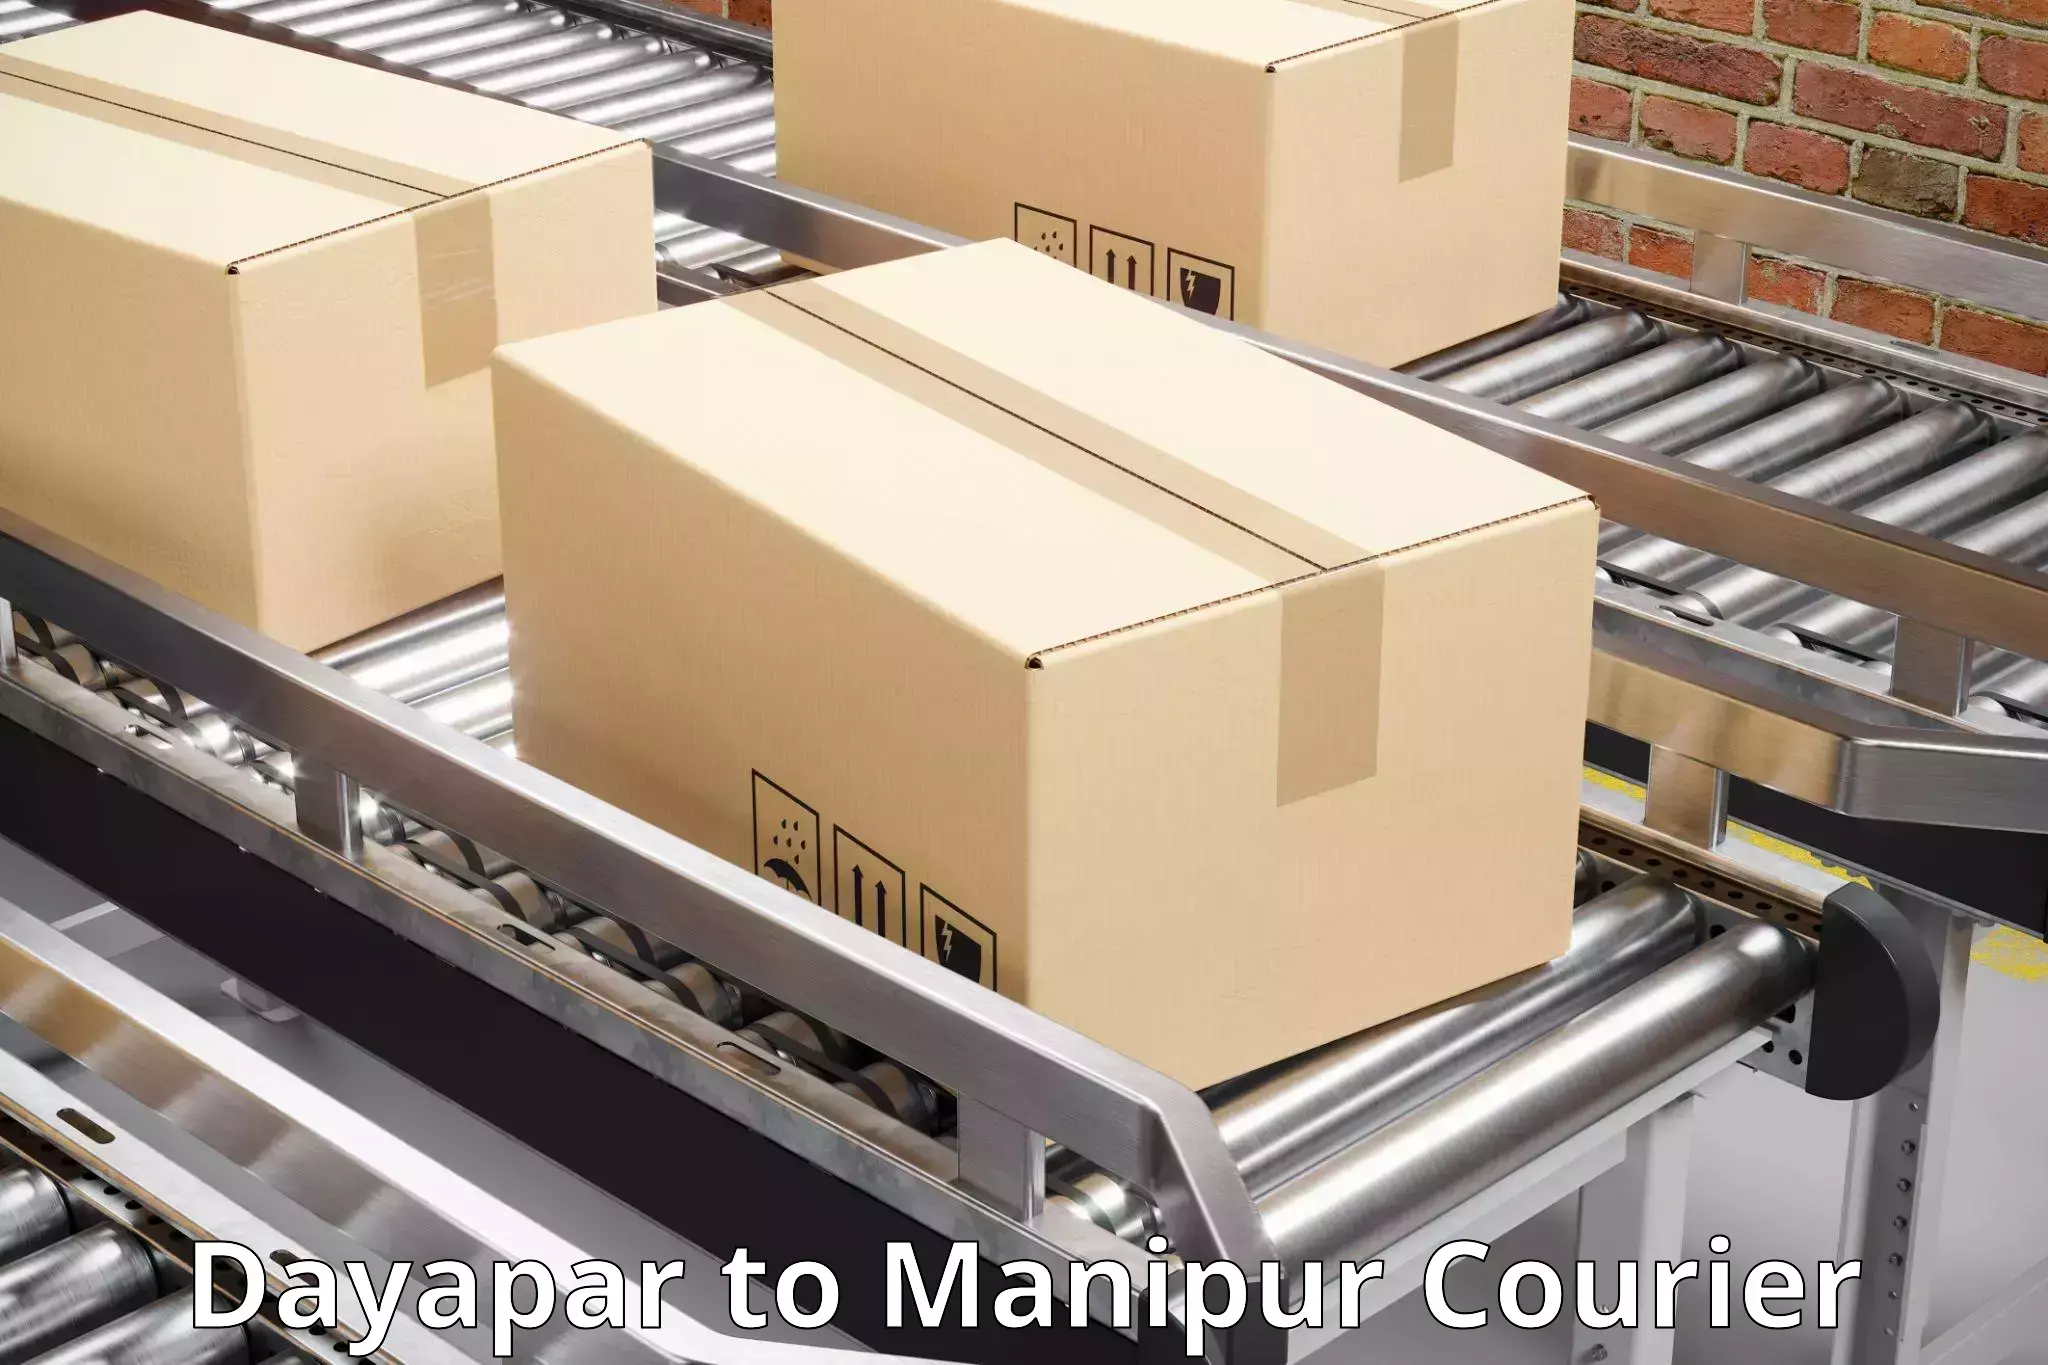 Expedited shipping methods Dayapar to Manipur